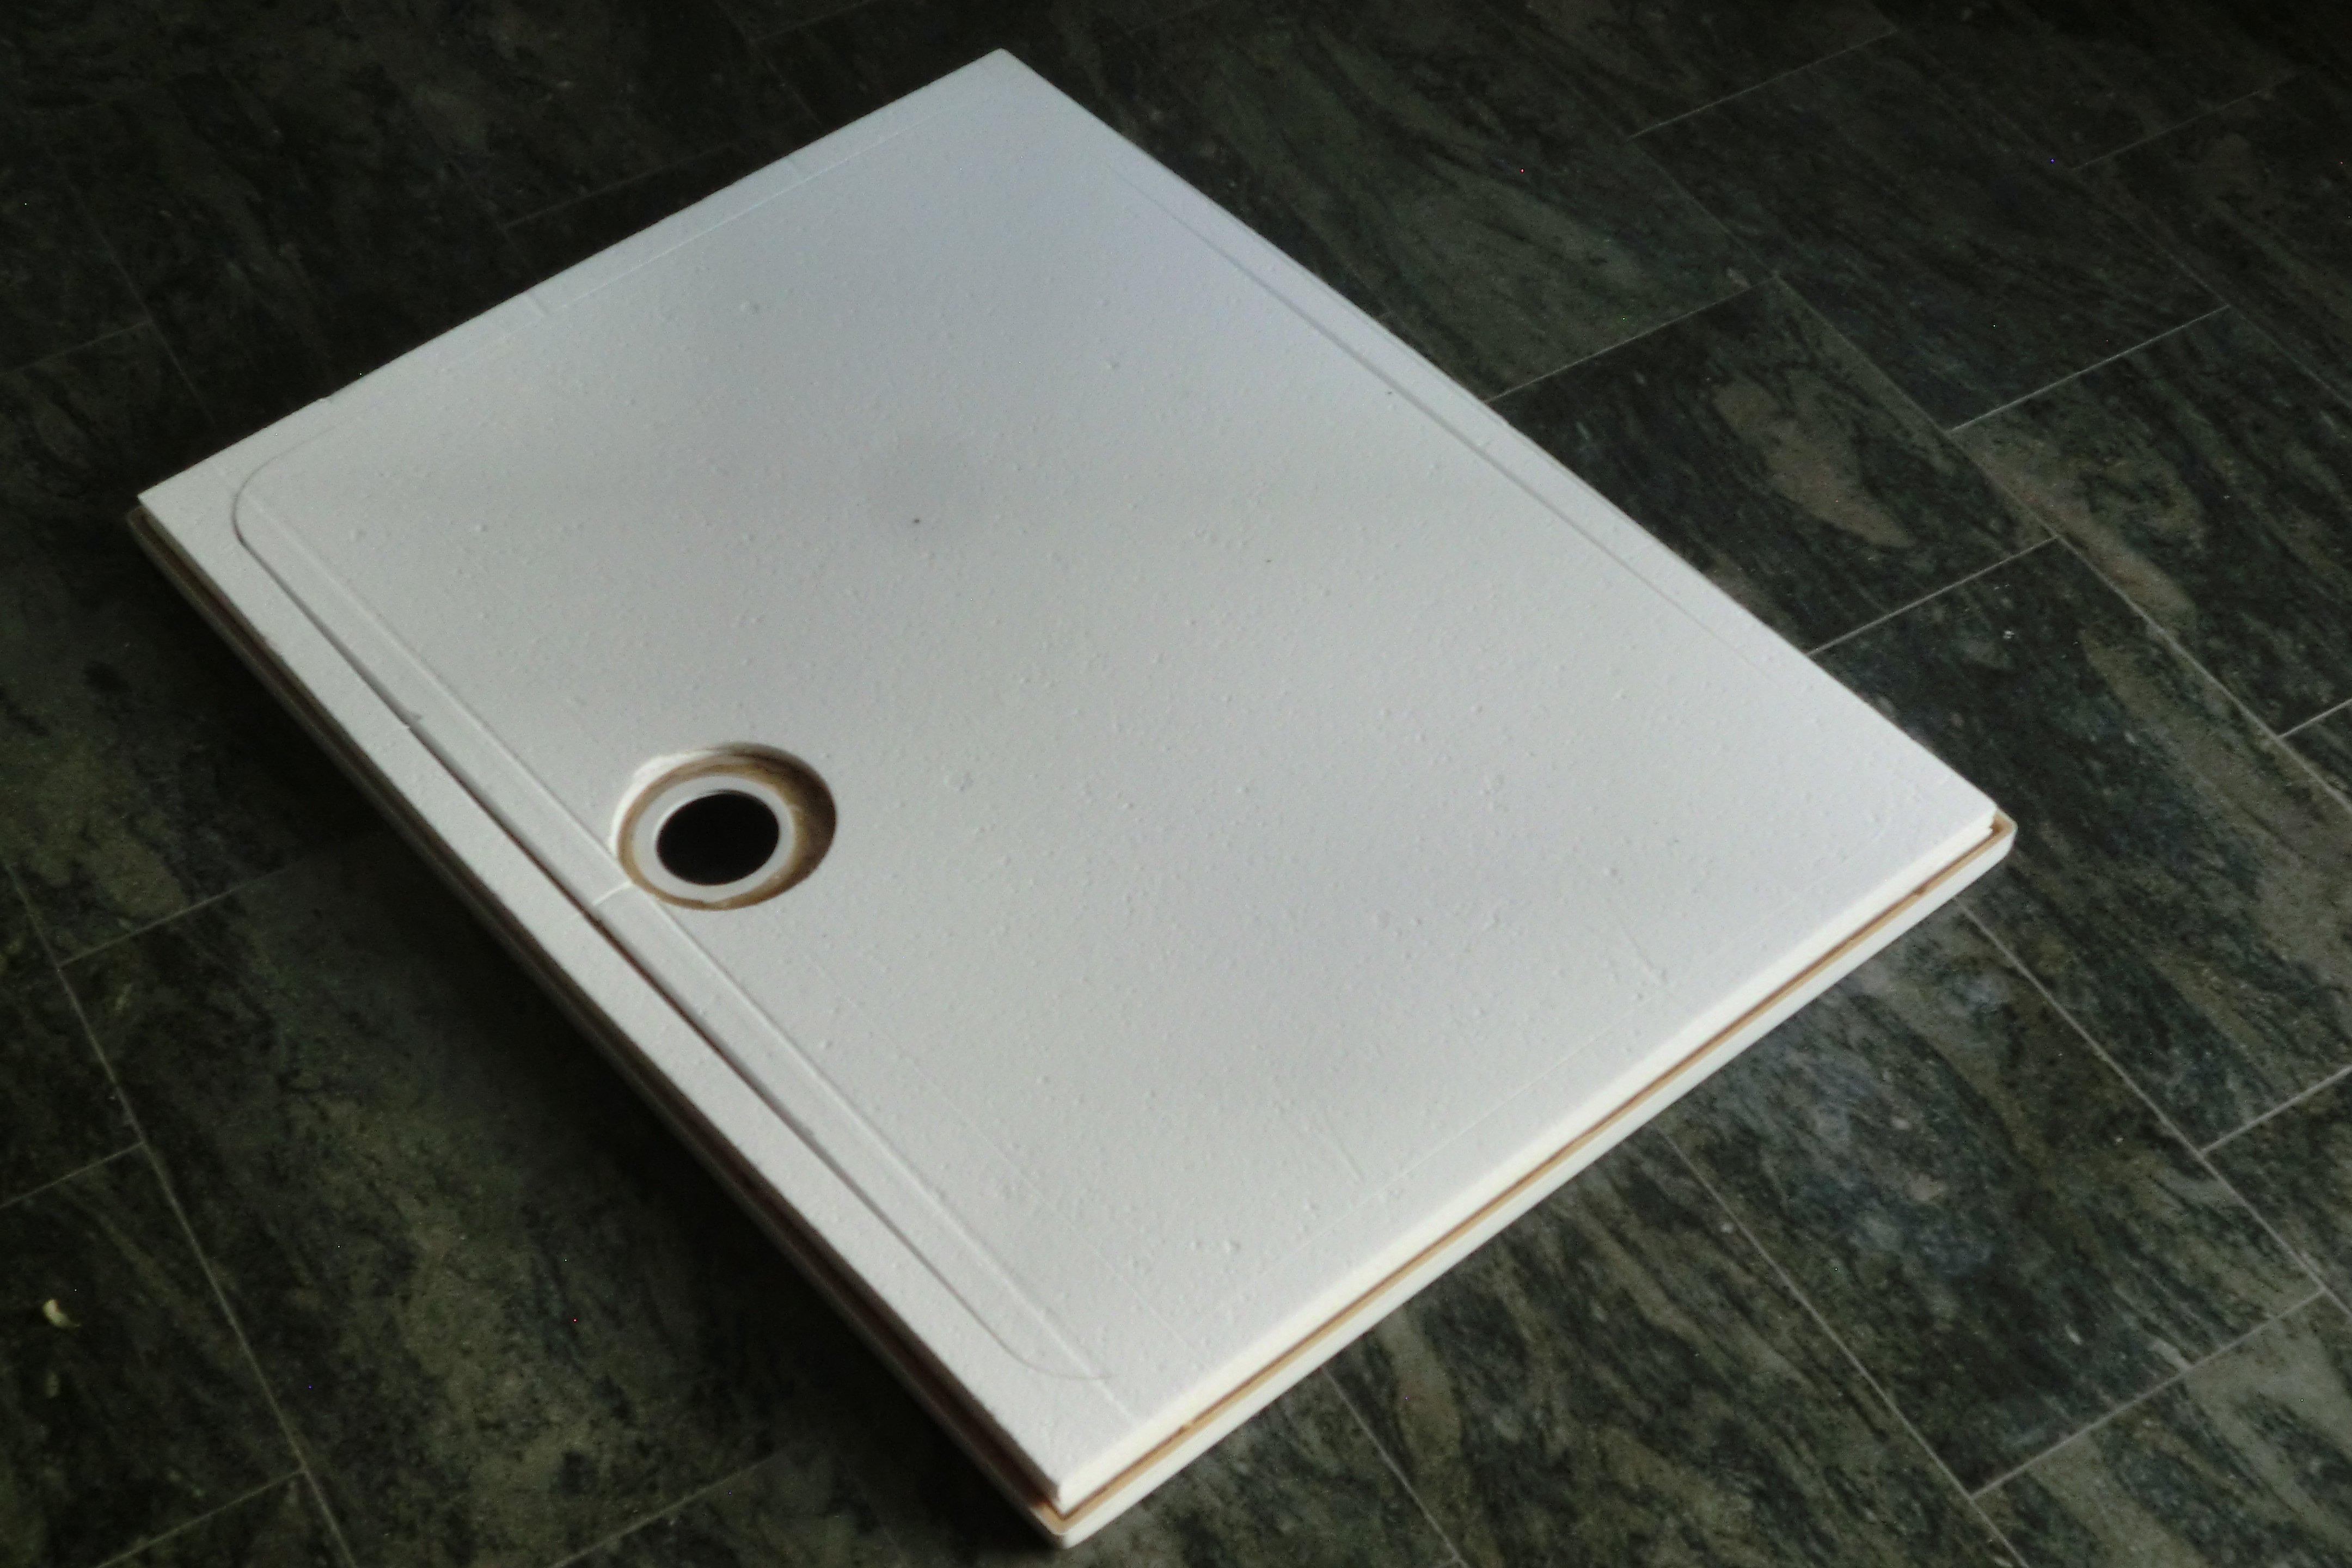 KOMPLETT-PAKET: Duschwanne 120 x 90 cm superflach 3,5 cm weiß mit GERADER STYROPOR-UNTERSEITE Acryl + Styroporträger/Wannenträger + Ablaufgarnitur chrom DN 90